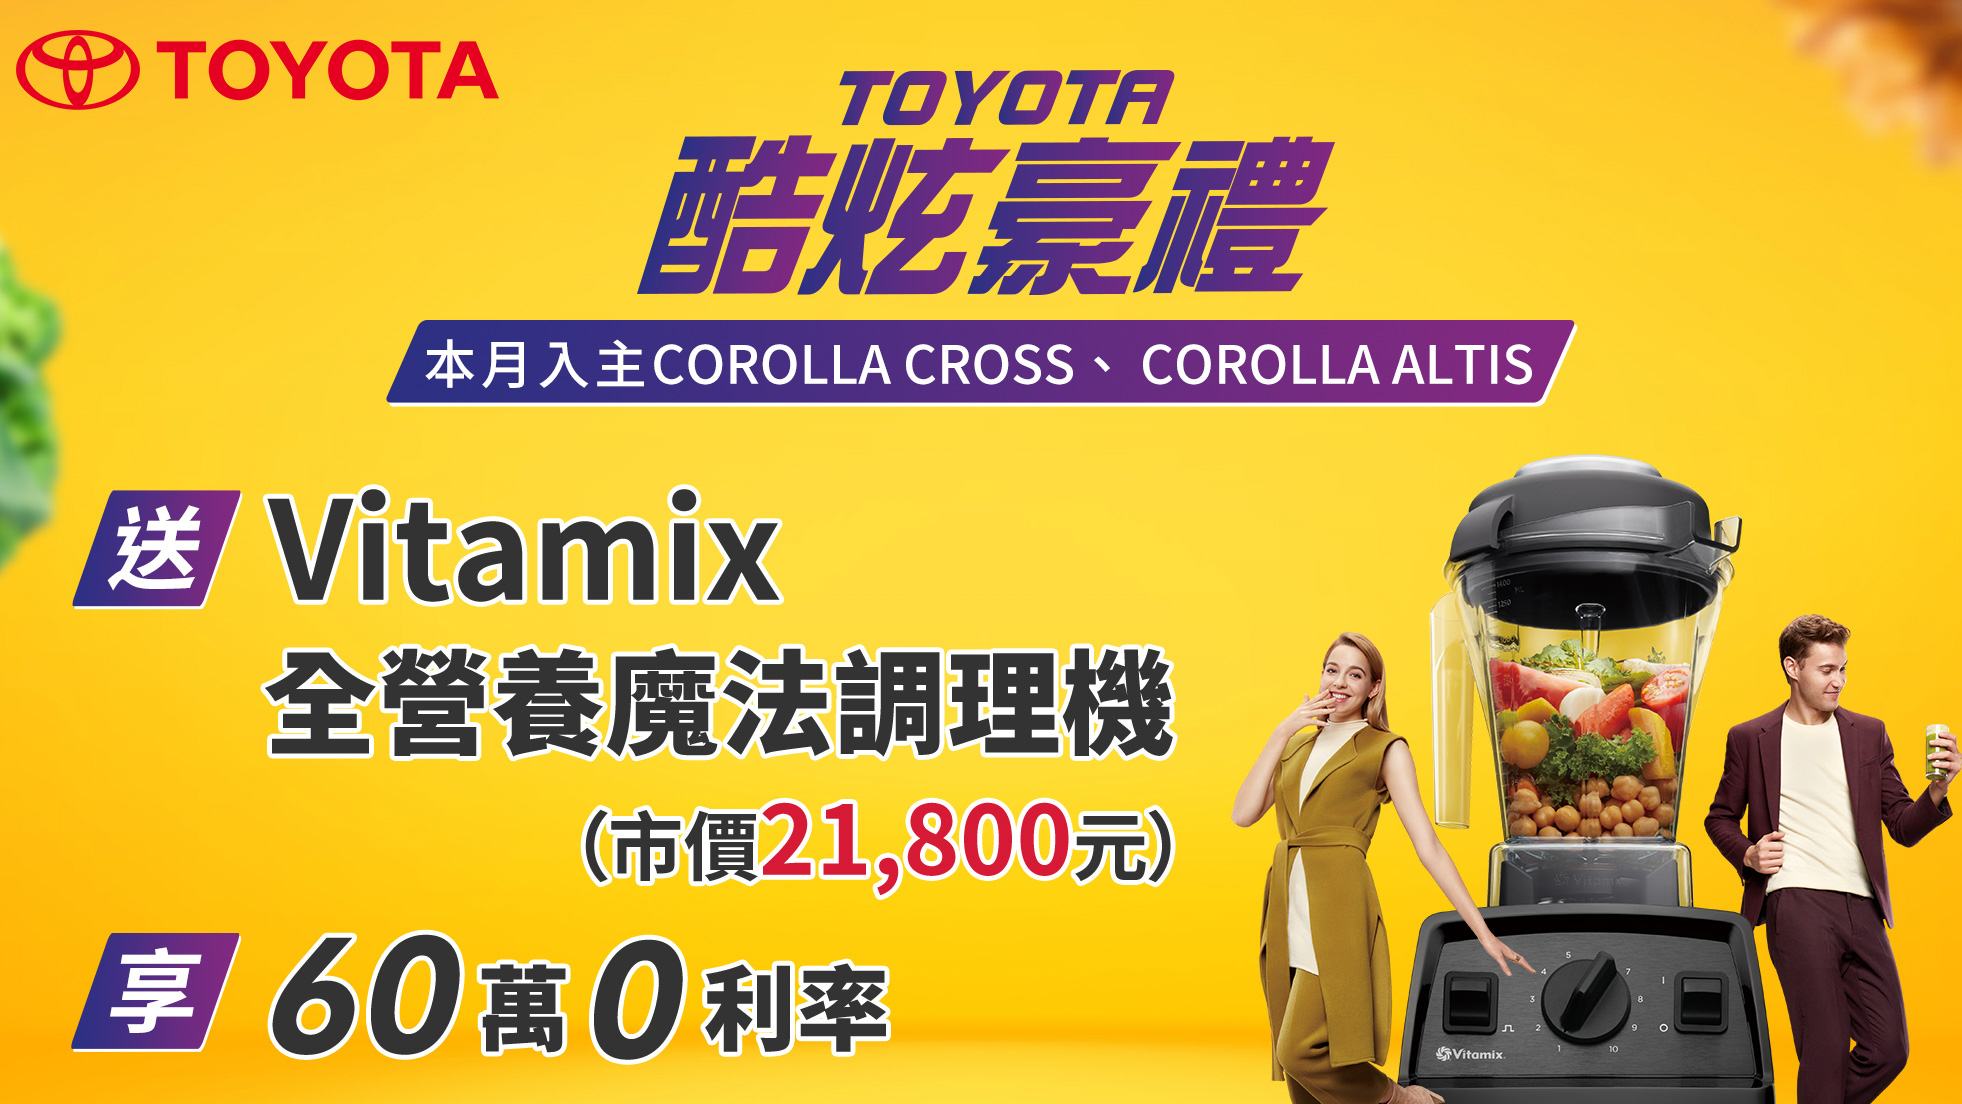 ▲ 本月入主 Toyota 指定車款 送 Vitamix 全營養魔法調理機等好禮